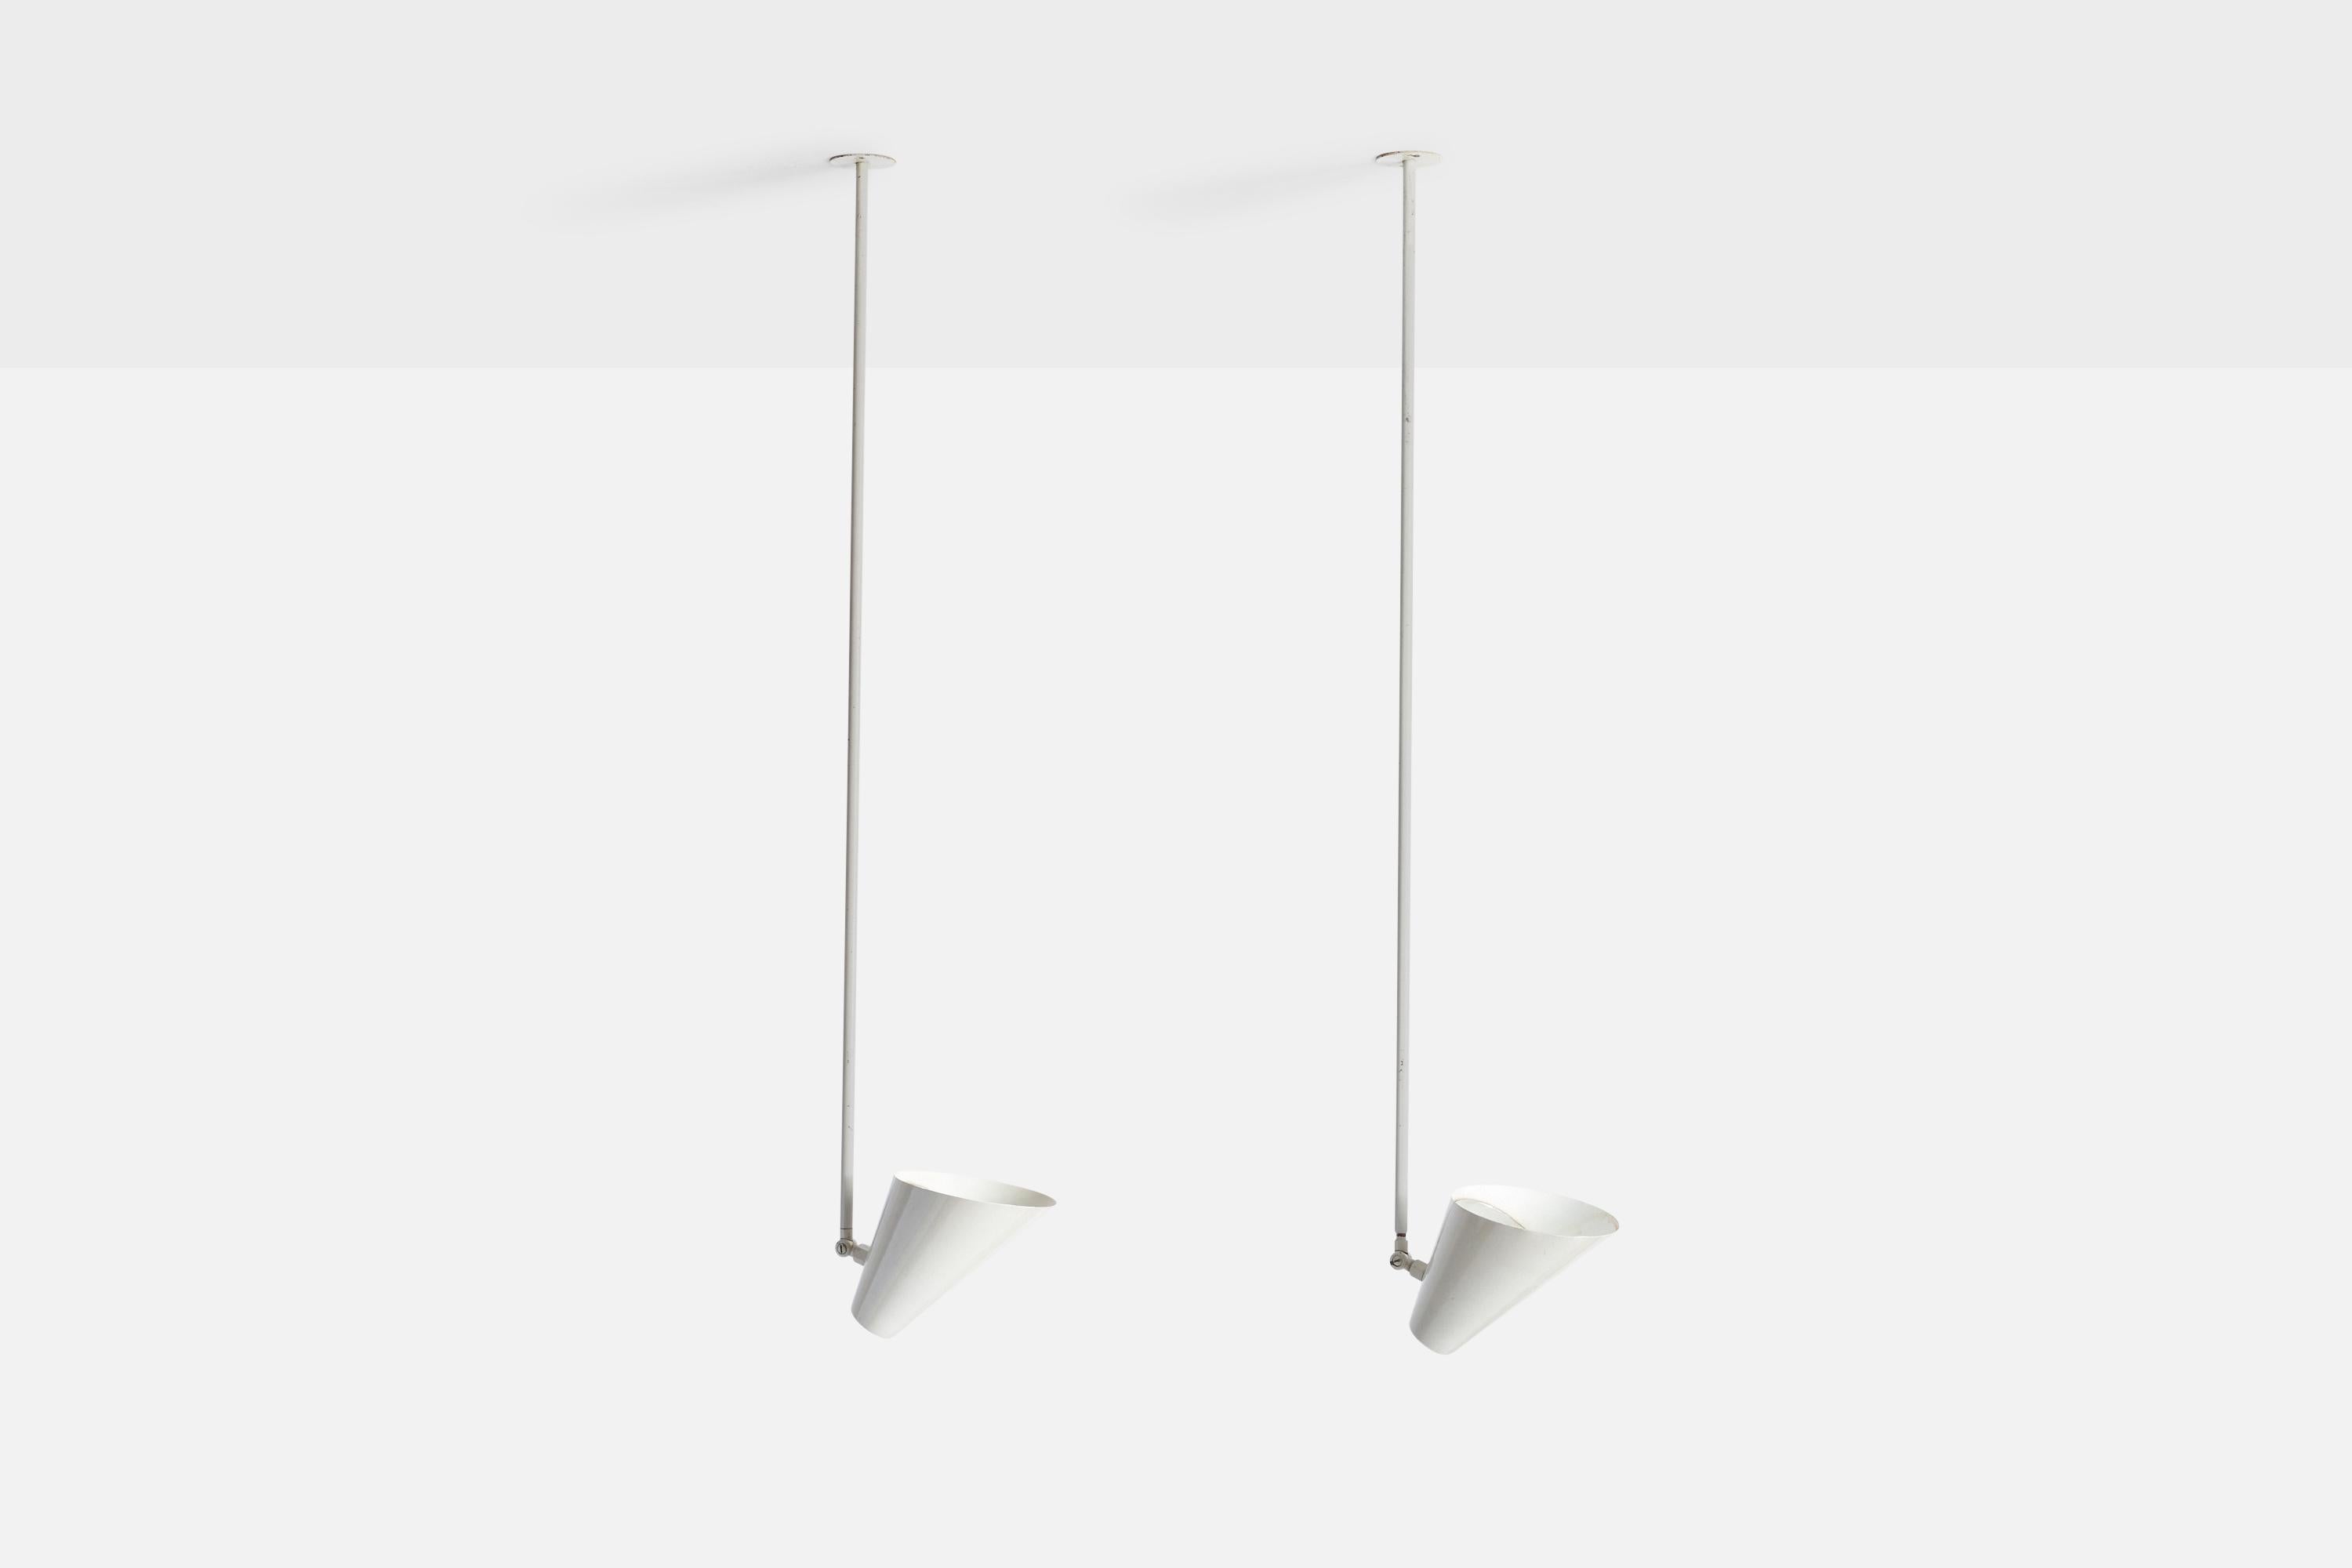 Ein Paar weiß lackierte Pendelleuchten aus Metall, entworfen von Vilhelm Lauritzen und hergestellt von Louis Poulsen, Dänemark, um 1950.

Abmessungen des Vordachs (Zoll): N/A
Sockel für Standard E-26 Glühbirnen. 2 Fassungen, auf der Leuchte ist